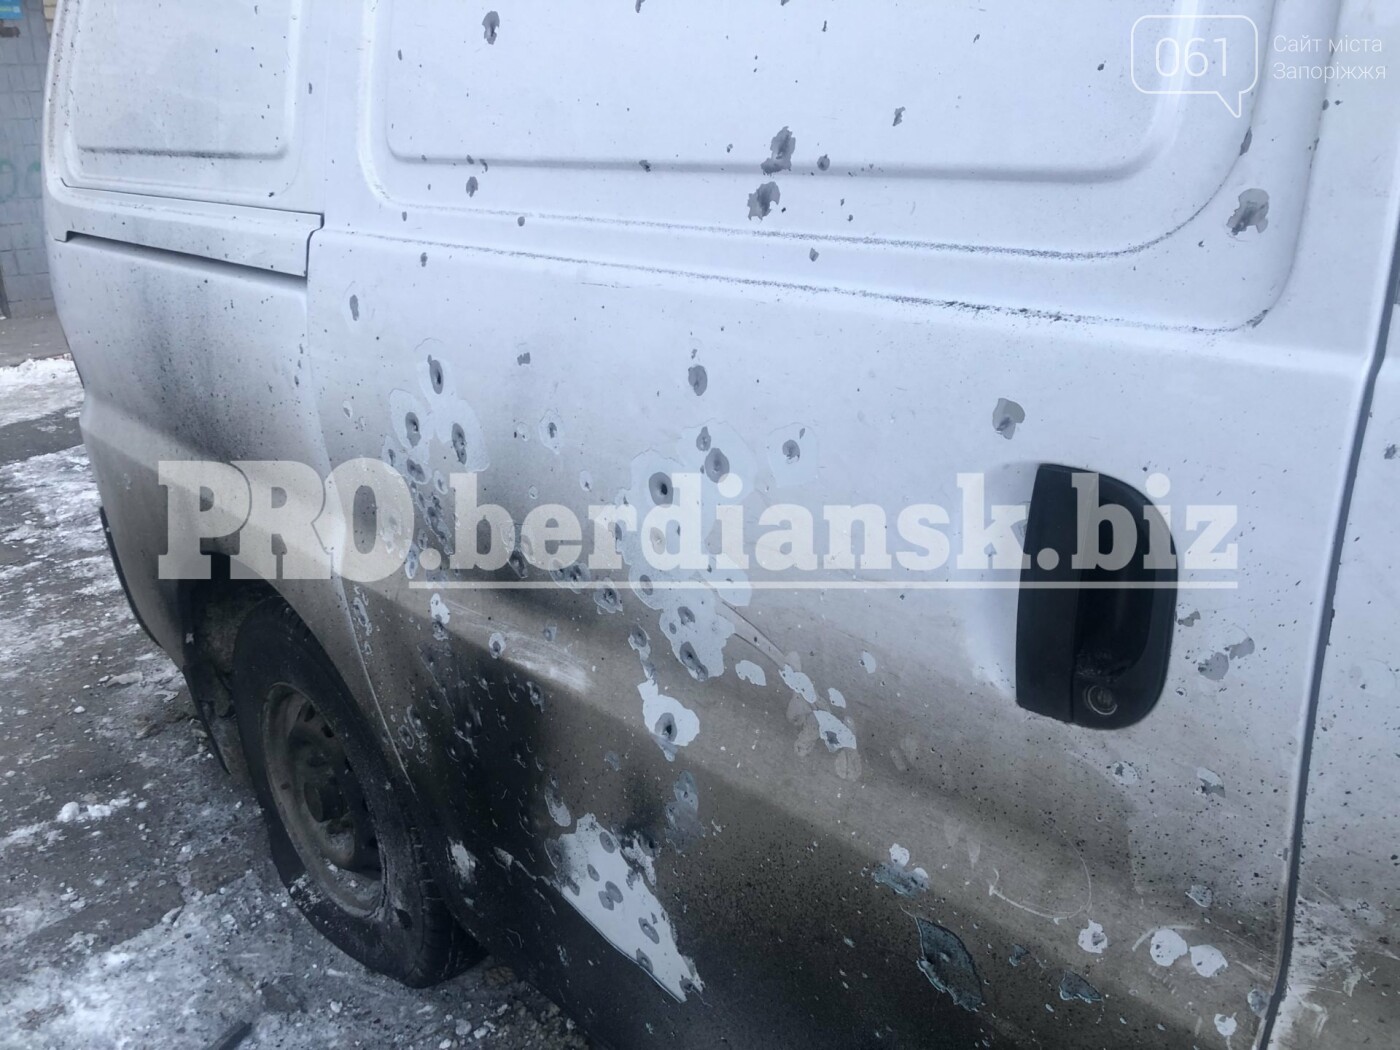 Во дворе общежития в Бердянске пытались взорвать автобус, - ФОТО, фото-3